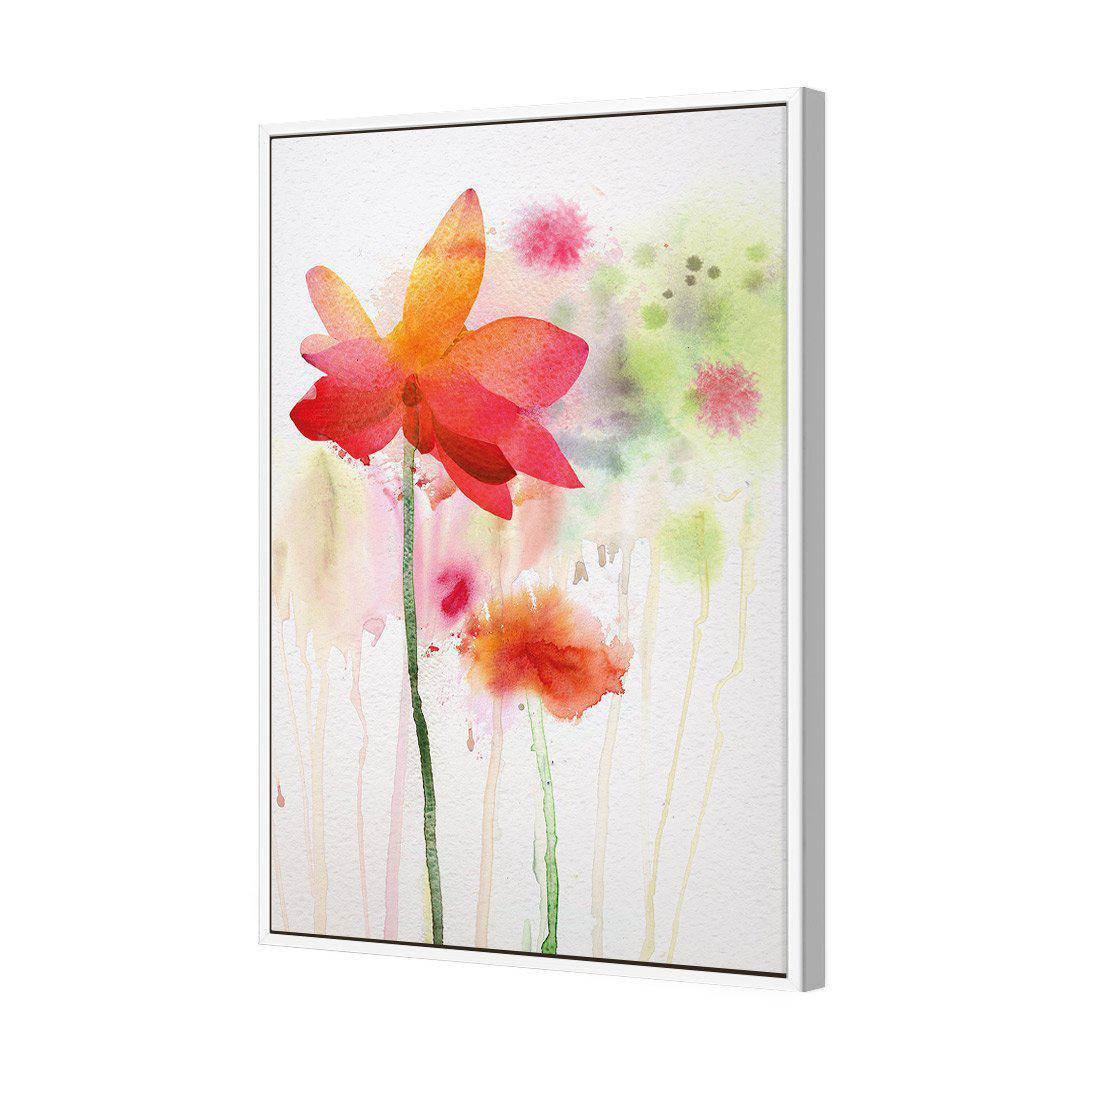 Spring Rain Canvas Art-Canvas-Wall Art Designs-45x30cm-Canvas - White Frame-Wall Art Designs